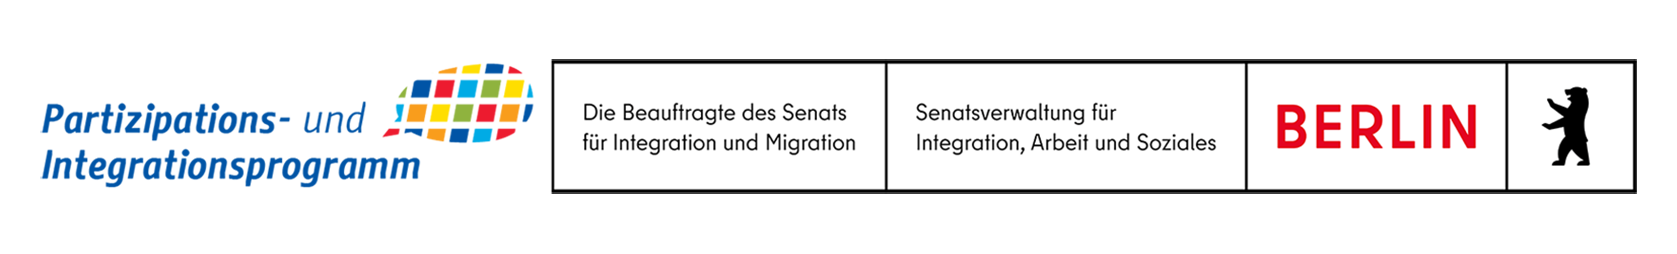 Partizipations- und Integrationsprogramm der Berliner Senatsverwaltung für Integration, Arbeit und Soziales